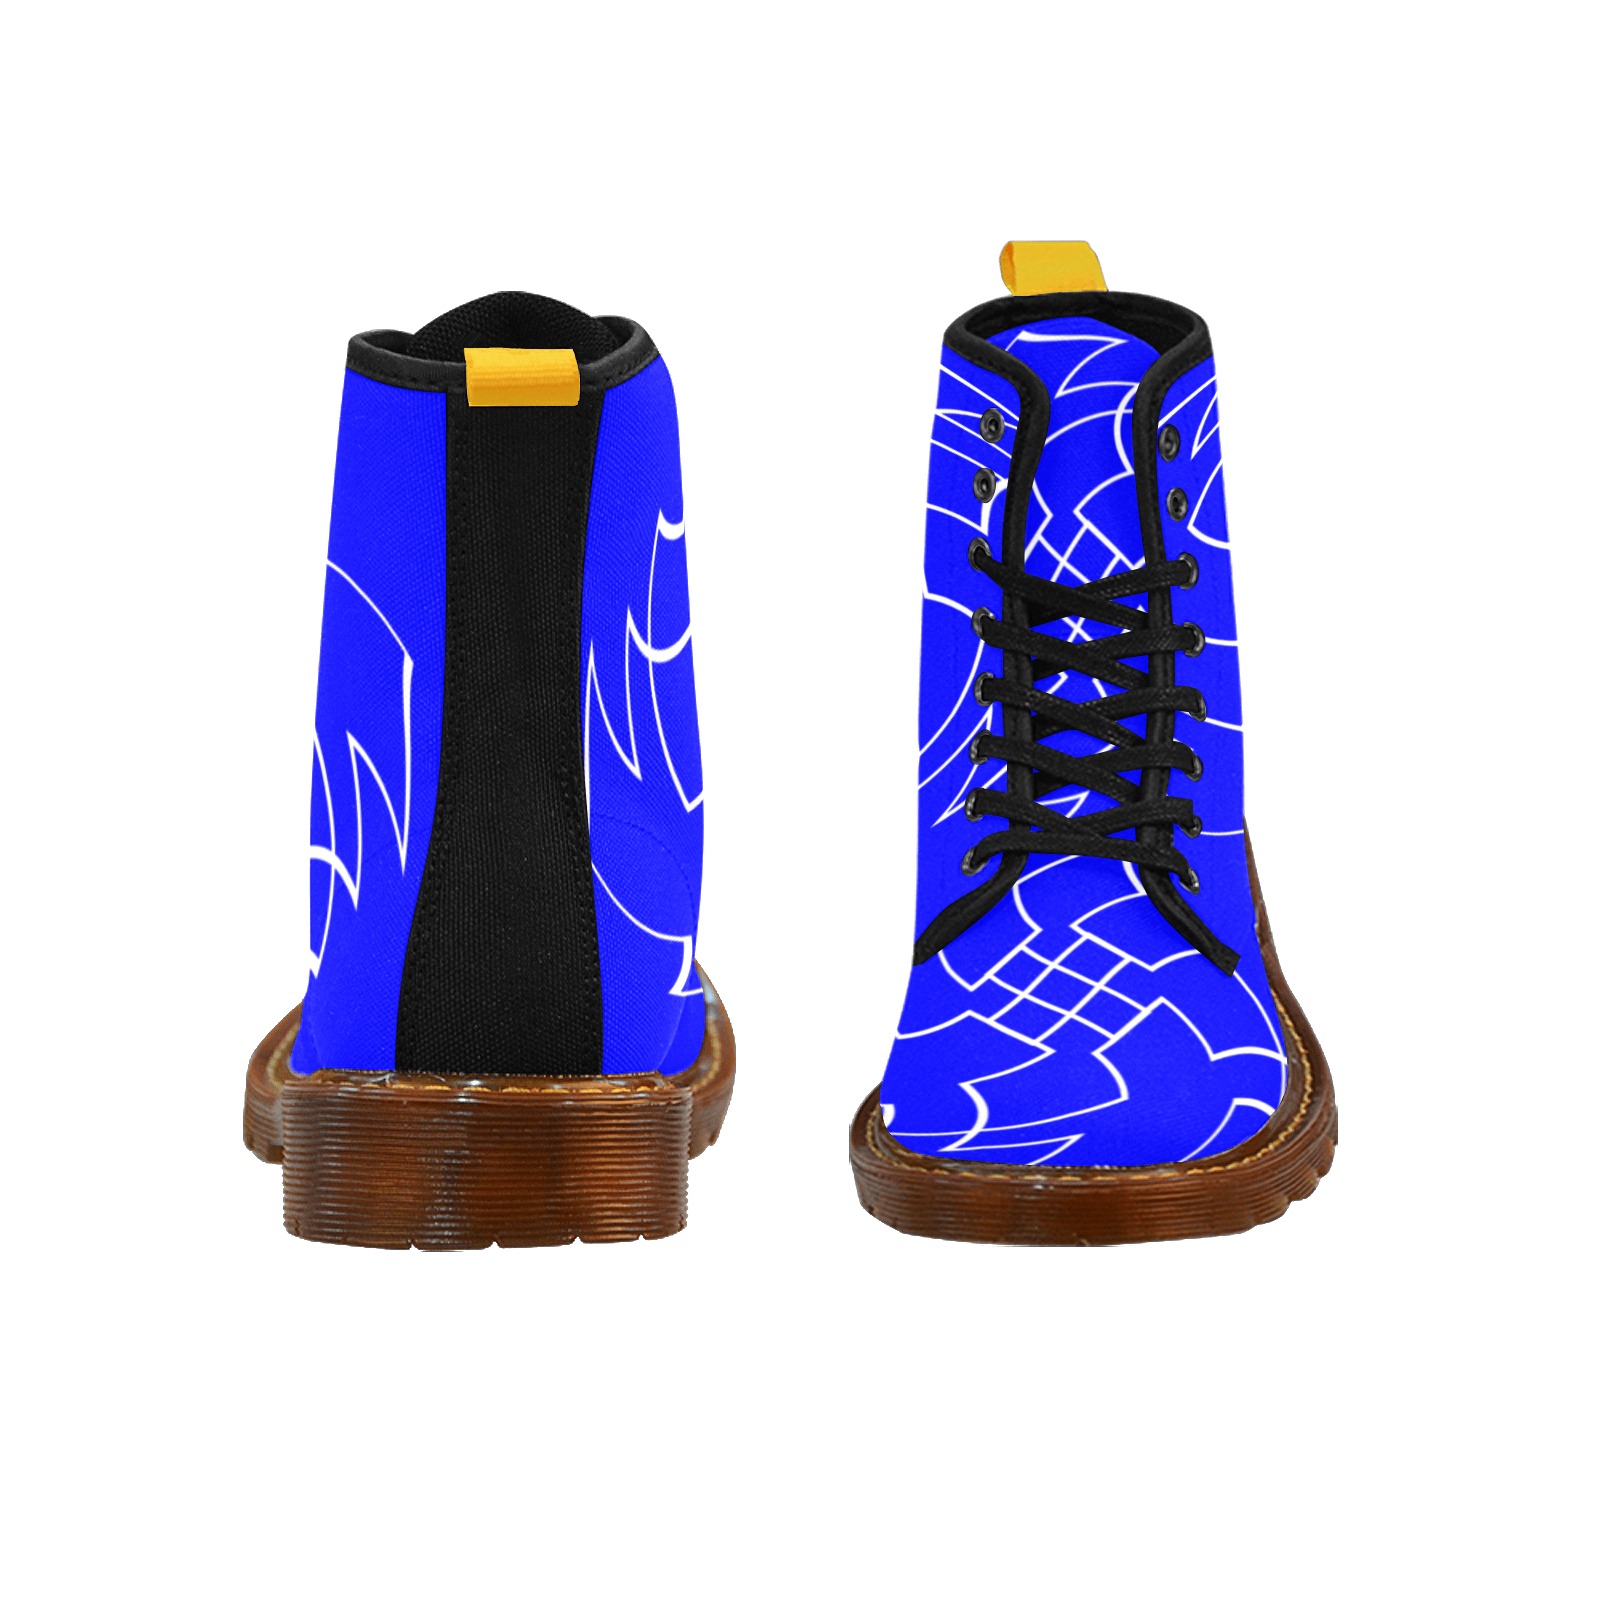 White InterlockingCrosses Twirled blue Martin Boots For Men Model 1203H